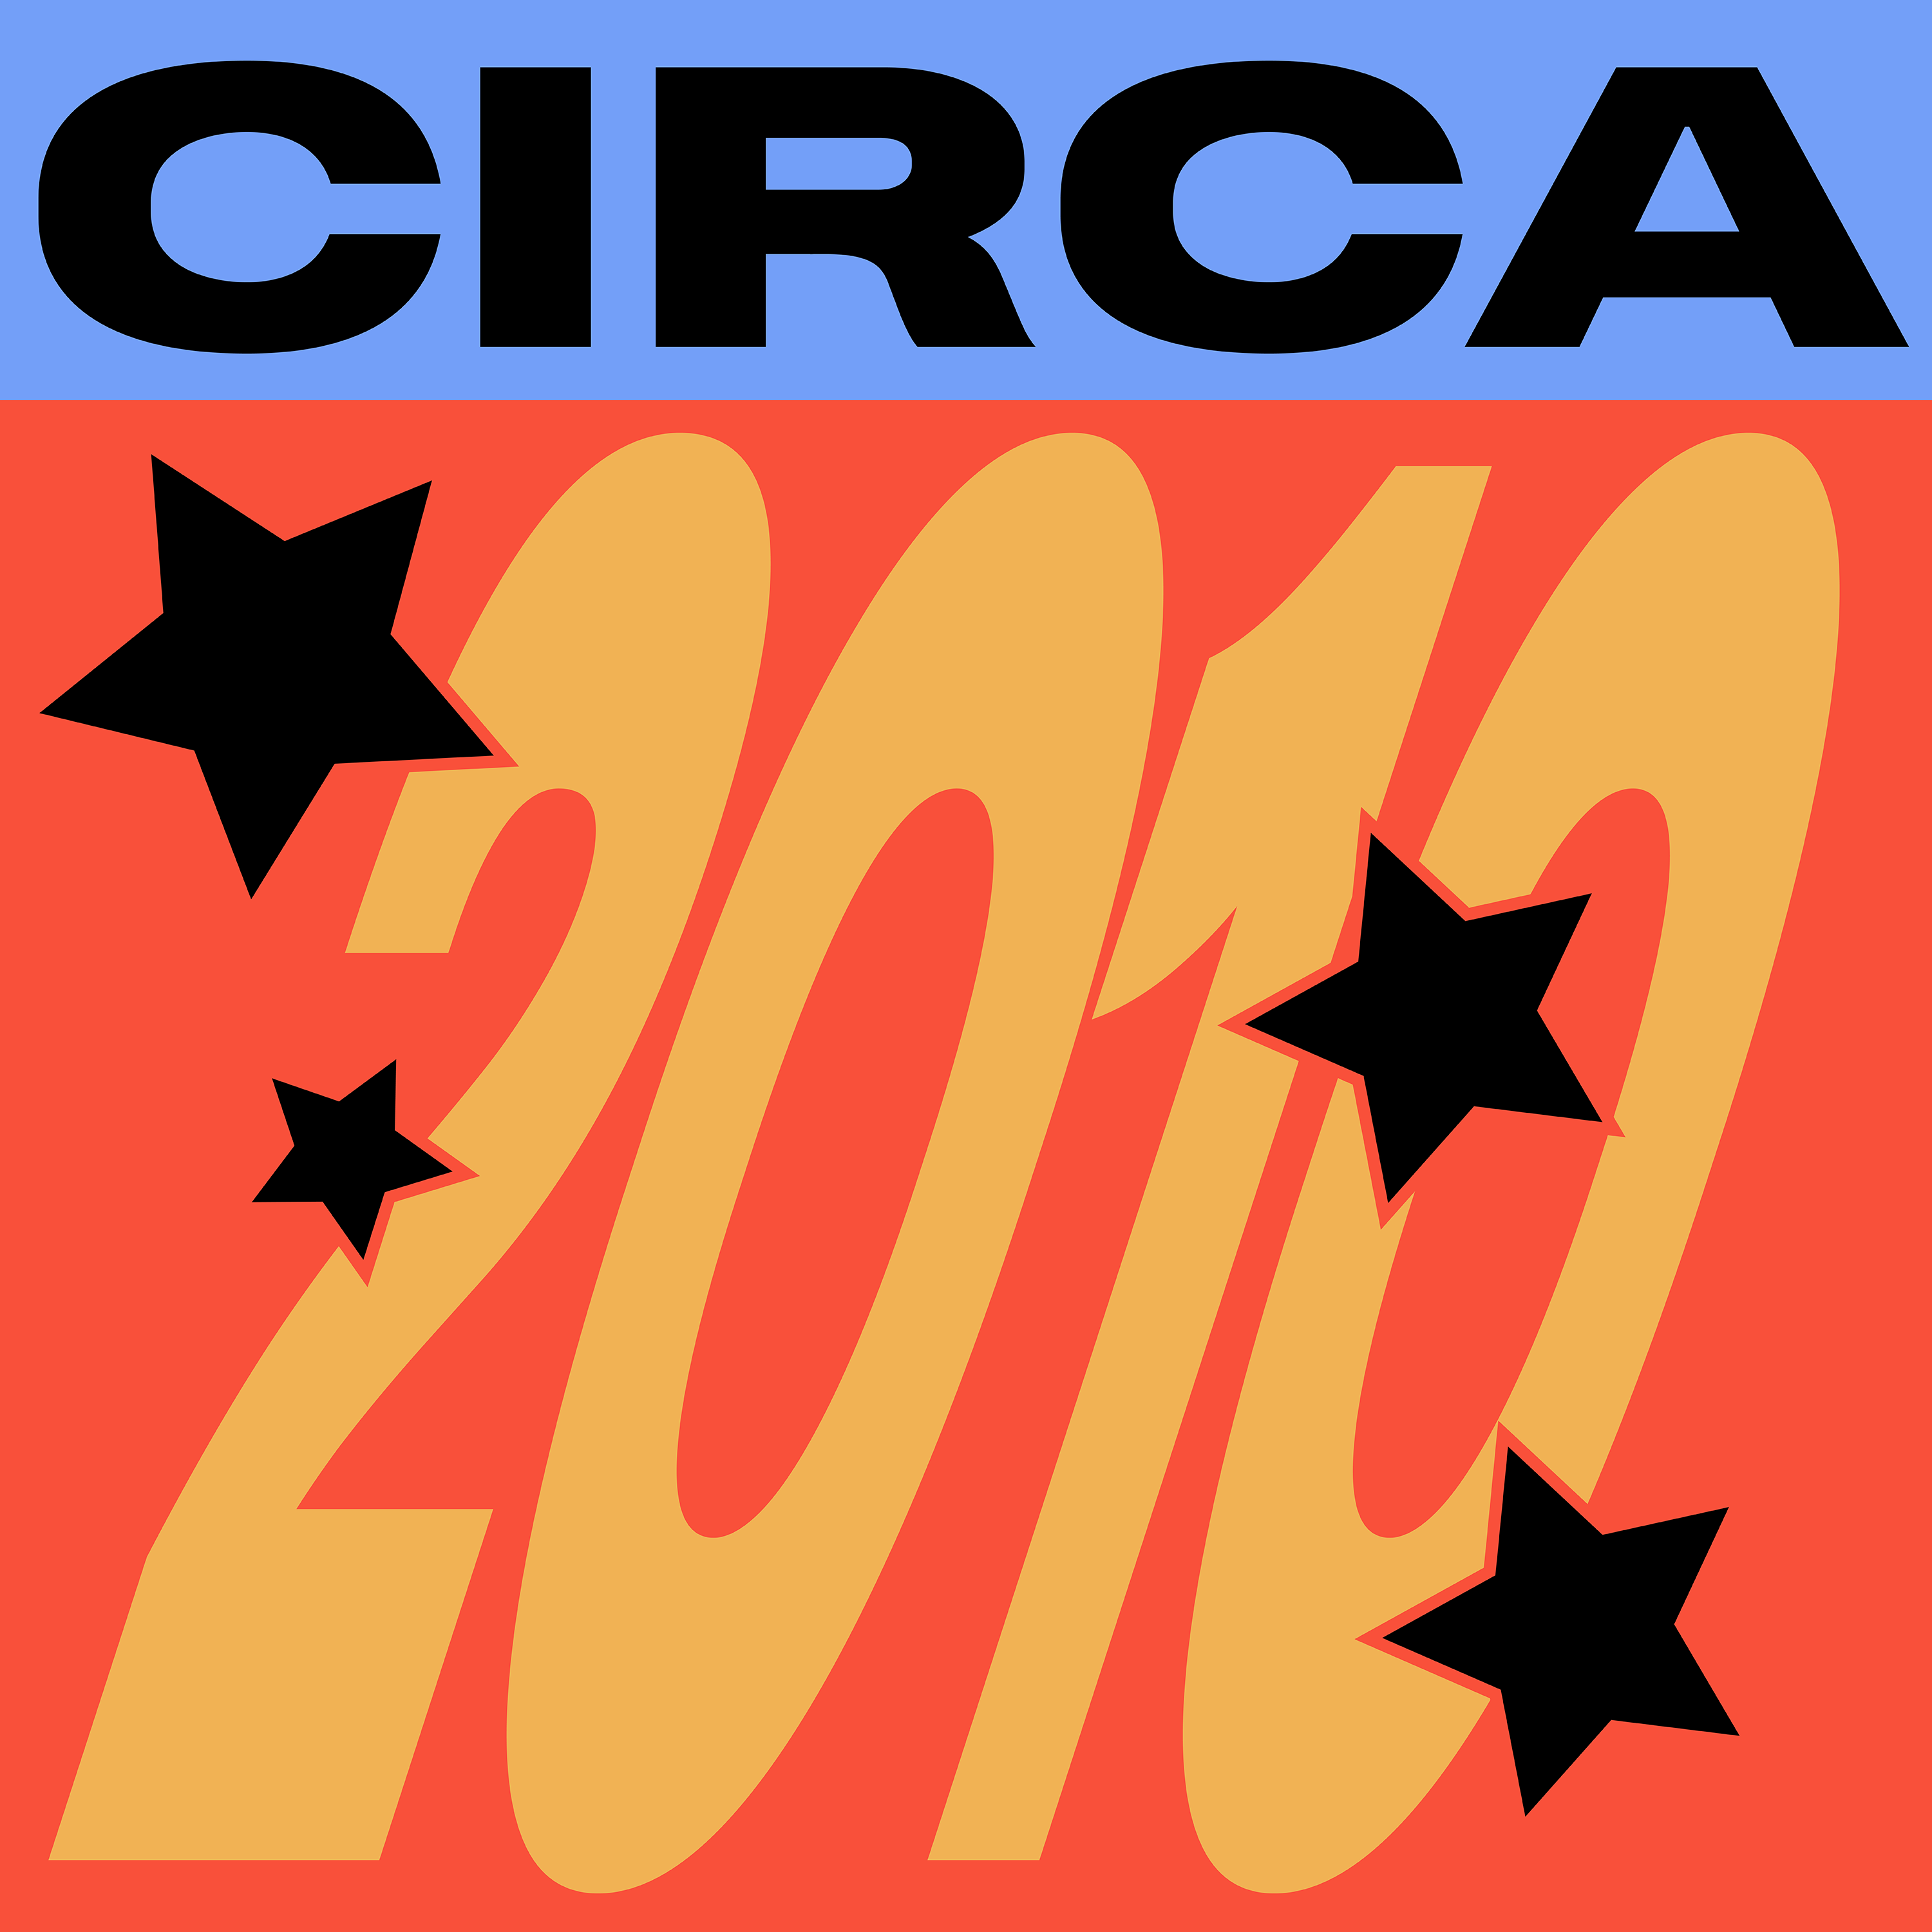 CIRCA 2010 #14 - Gold Class